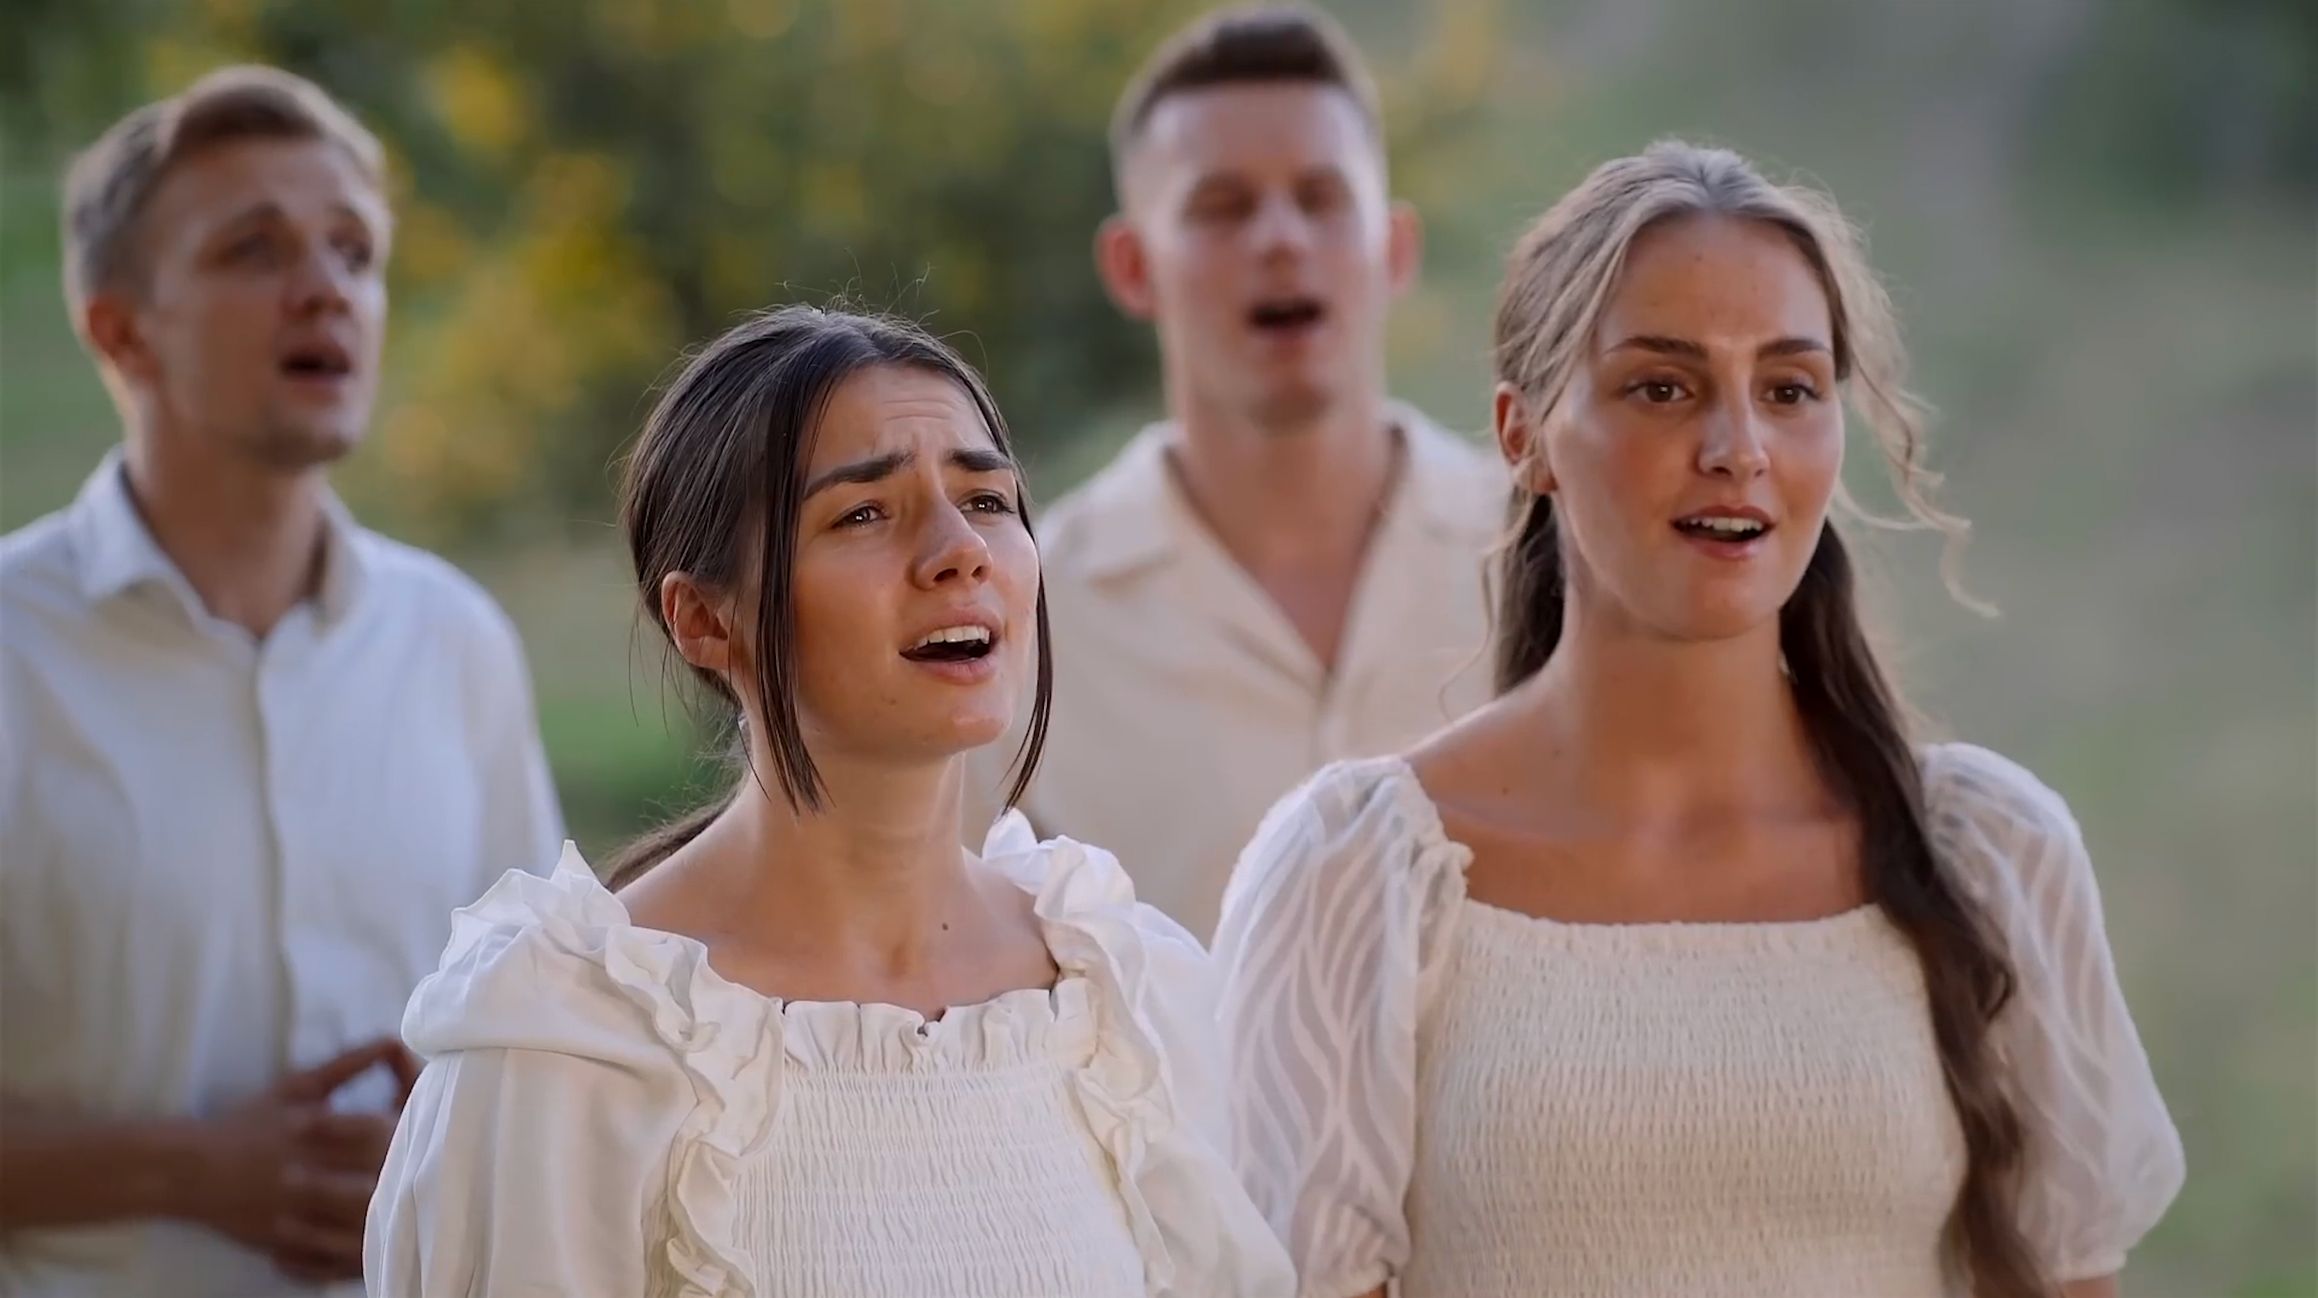 Duitse jongeren zingen 'Als een hert' op schitterende wijze!